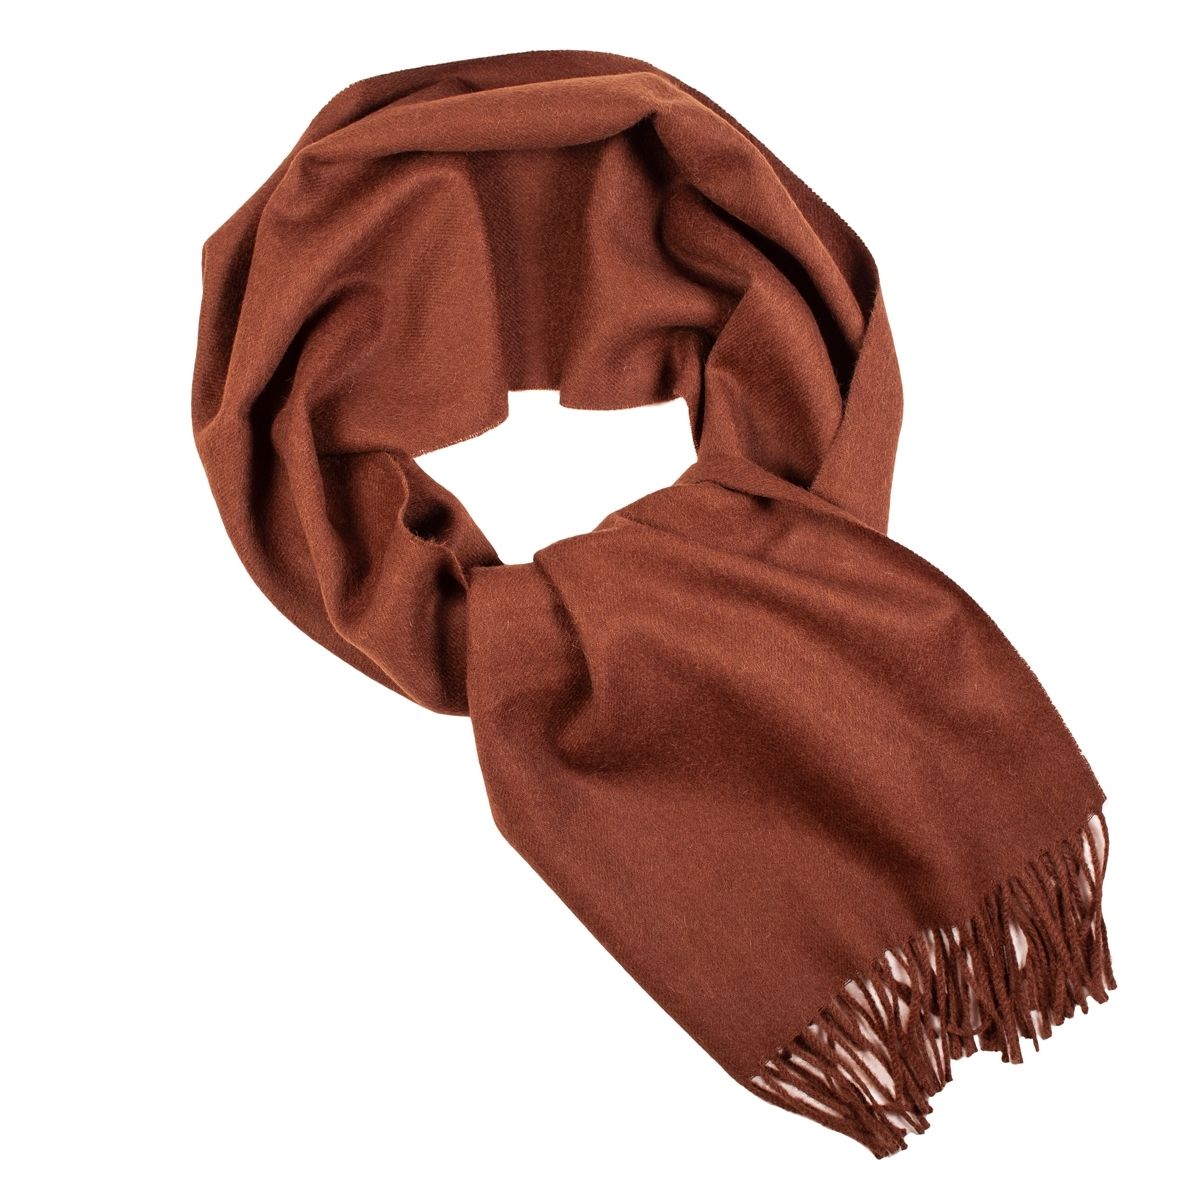 Удобный шарф. Коричневый шарф. Шарфик коричневый. Коричневый платок. Шарф женский, коричневый.